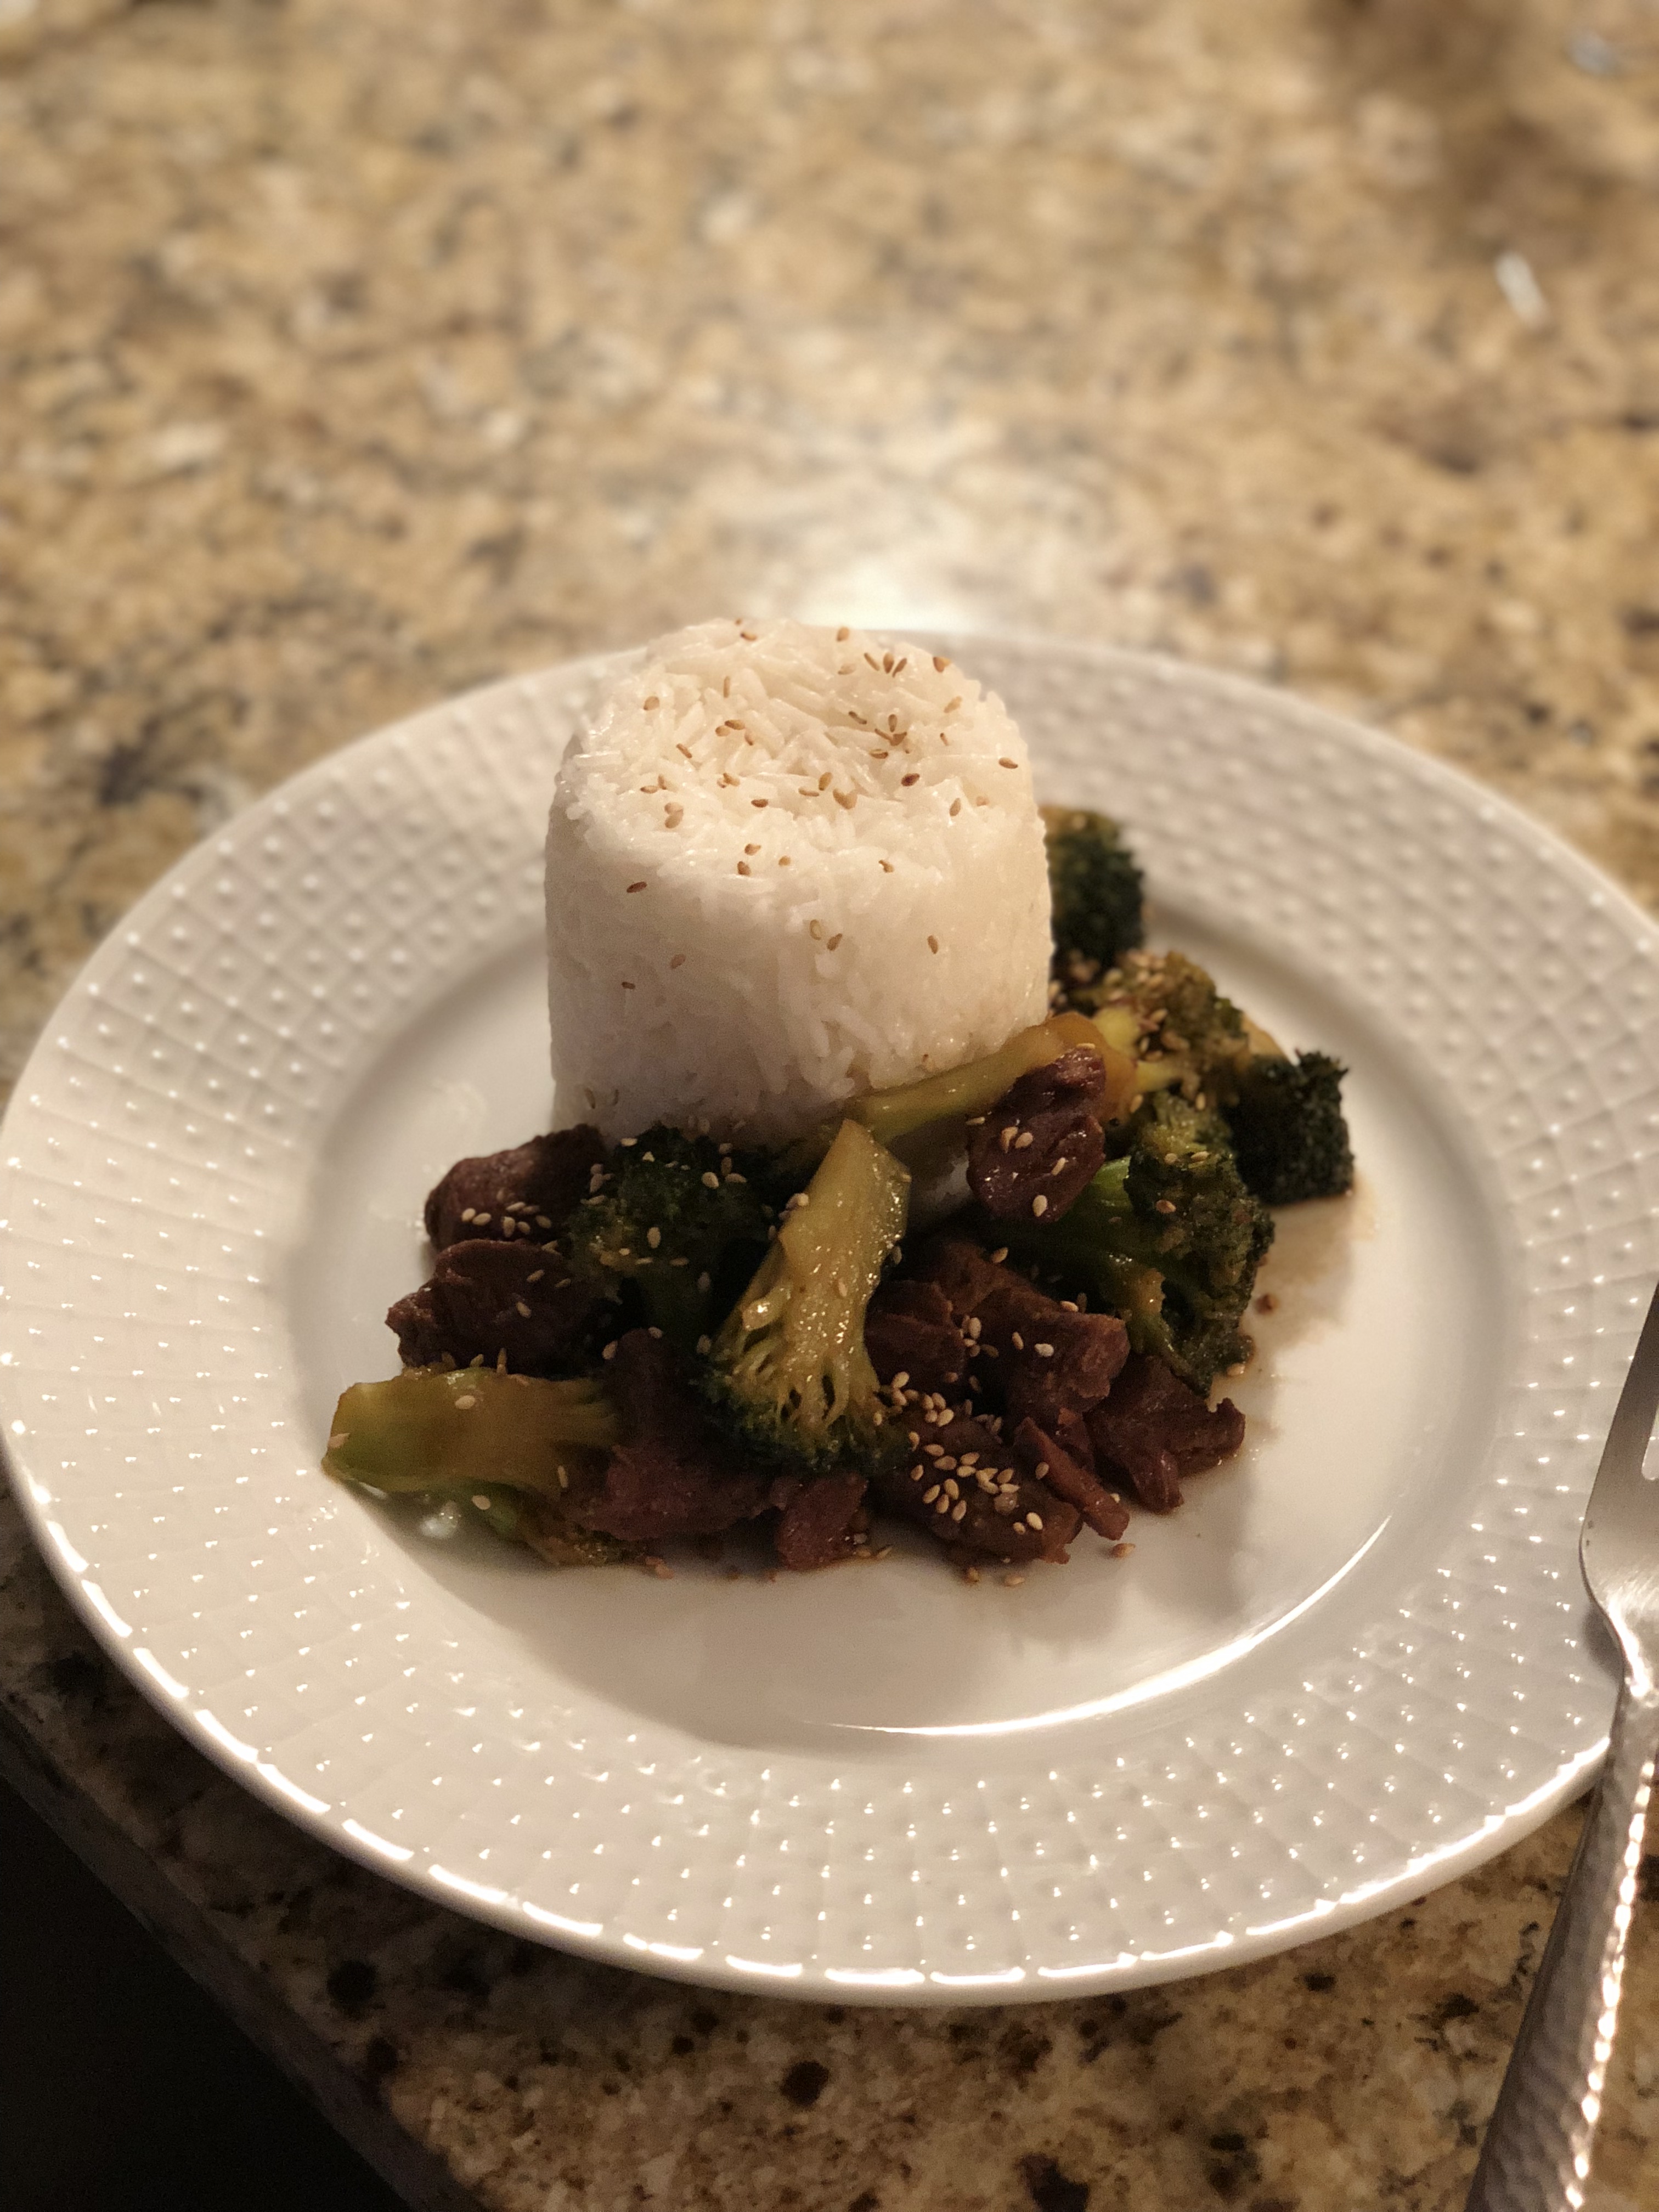 Slow Cooker Broccoli Beef